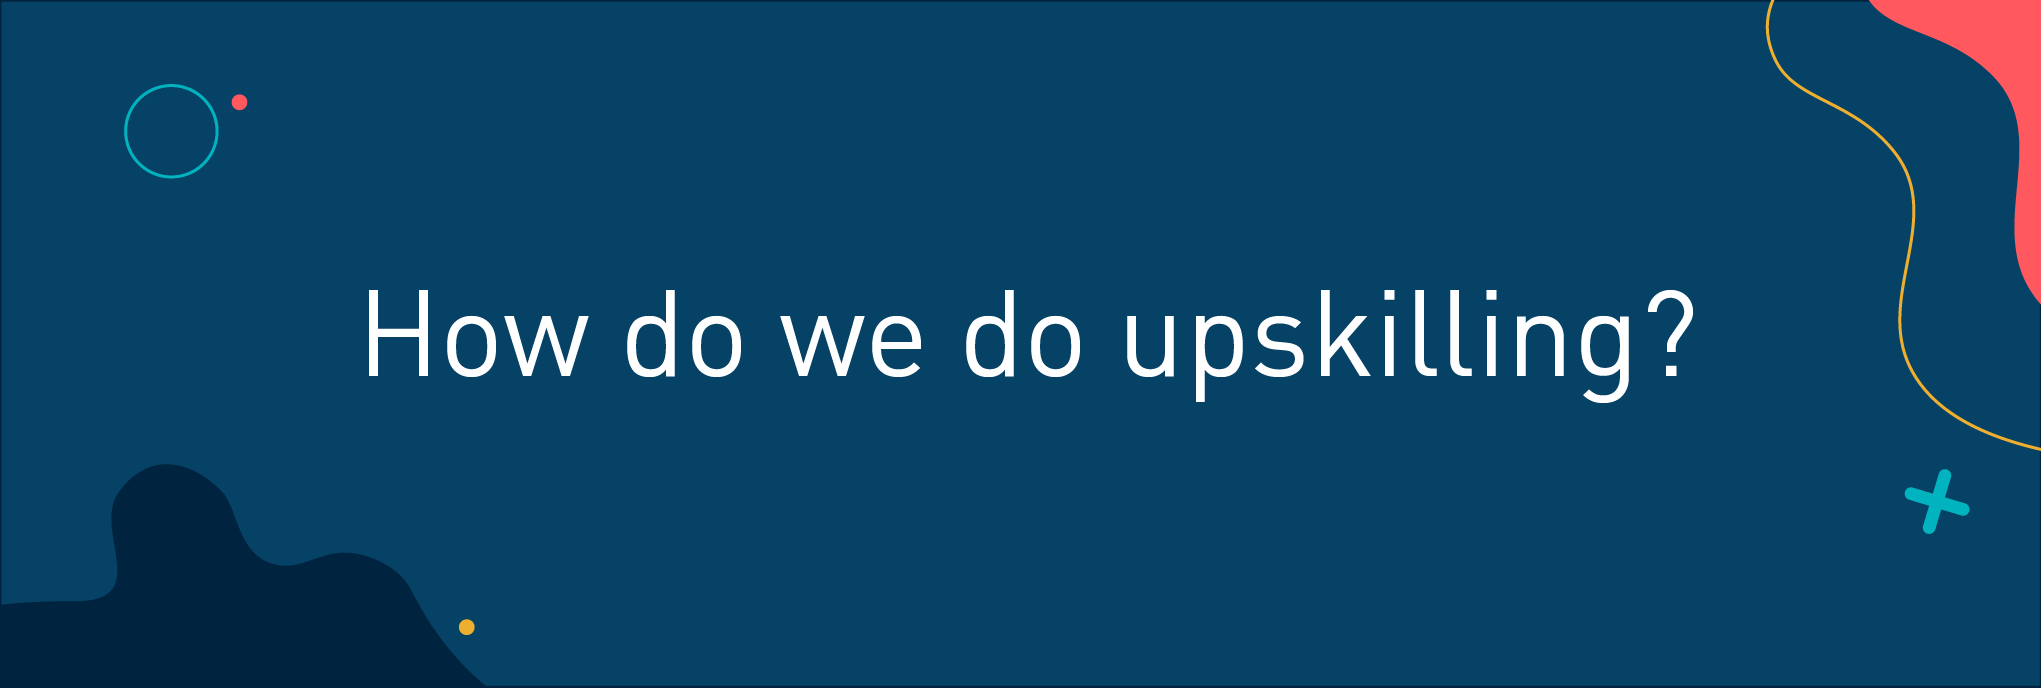 How do we do upskilling?